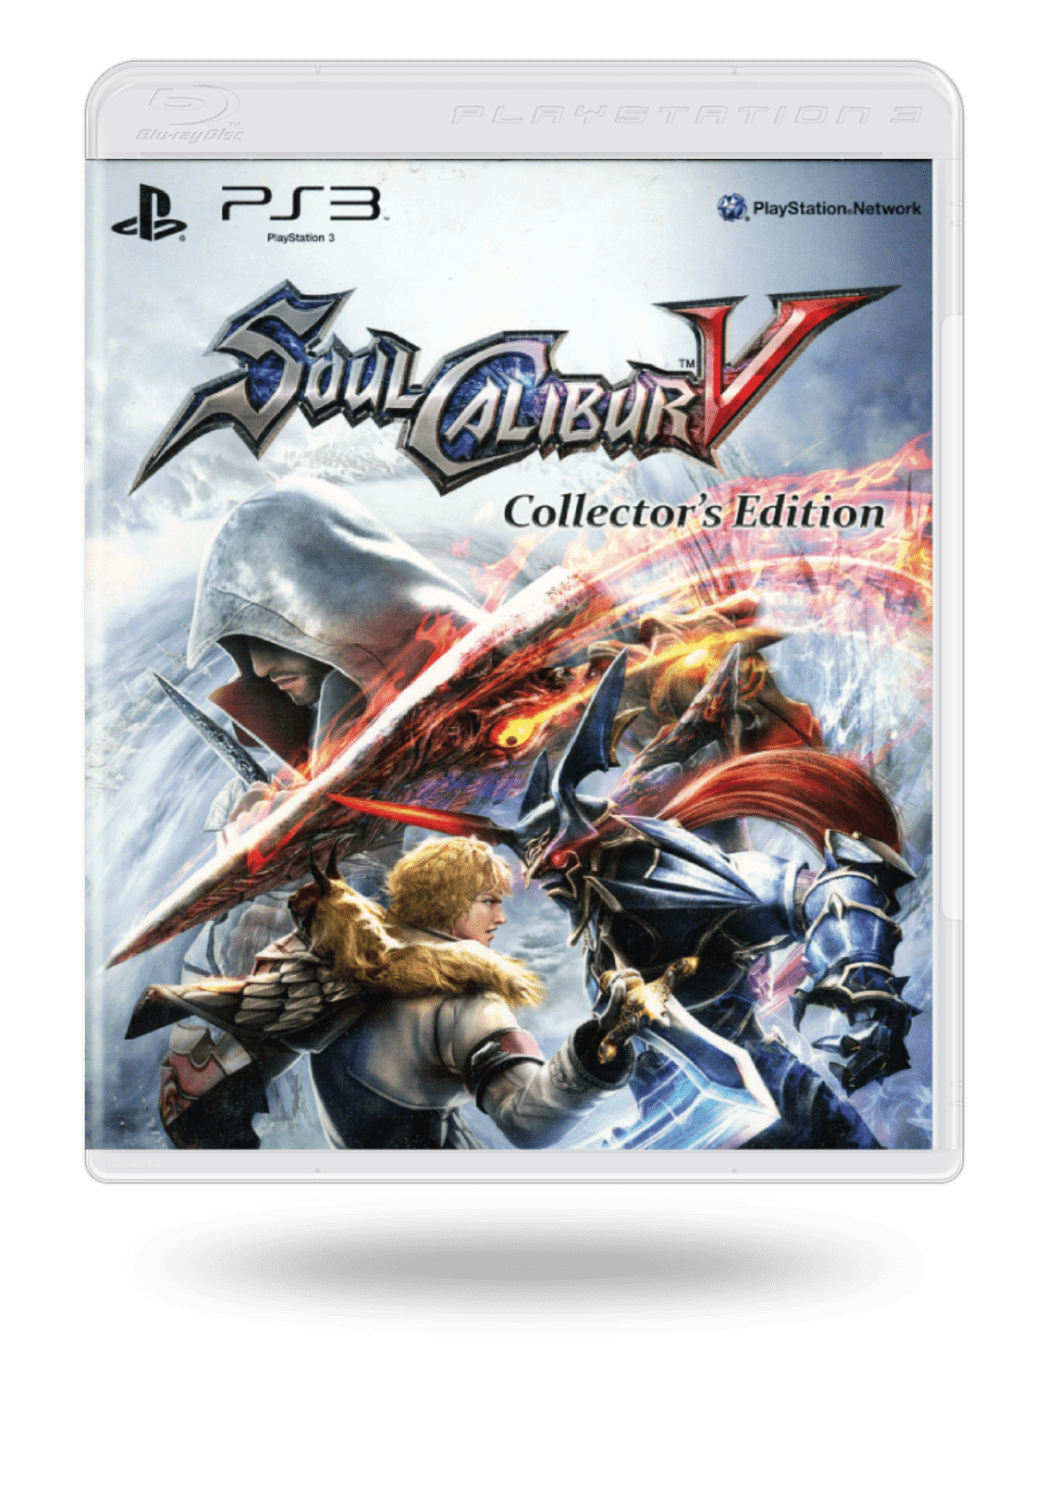 Hazme Integrar Ambiguo Comprar Soul Calibur V Collector's Edition segunda mano de PlayStation 3 al  Mejor Precio | ENEBA